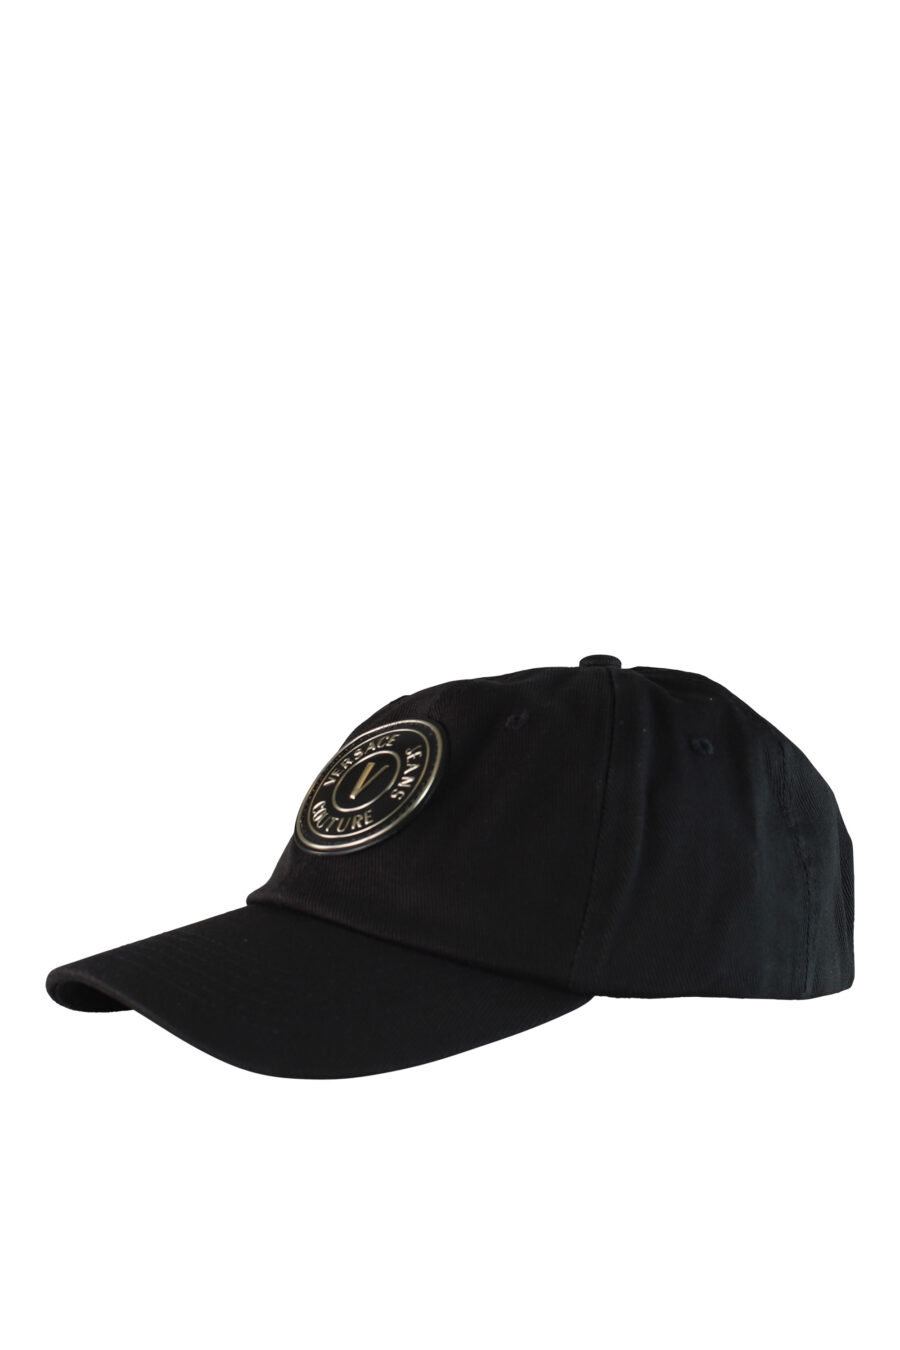 Gorra negra con logo circular dorado - IMG 0503